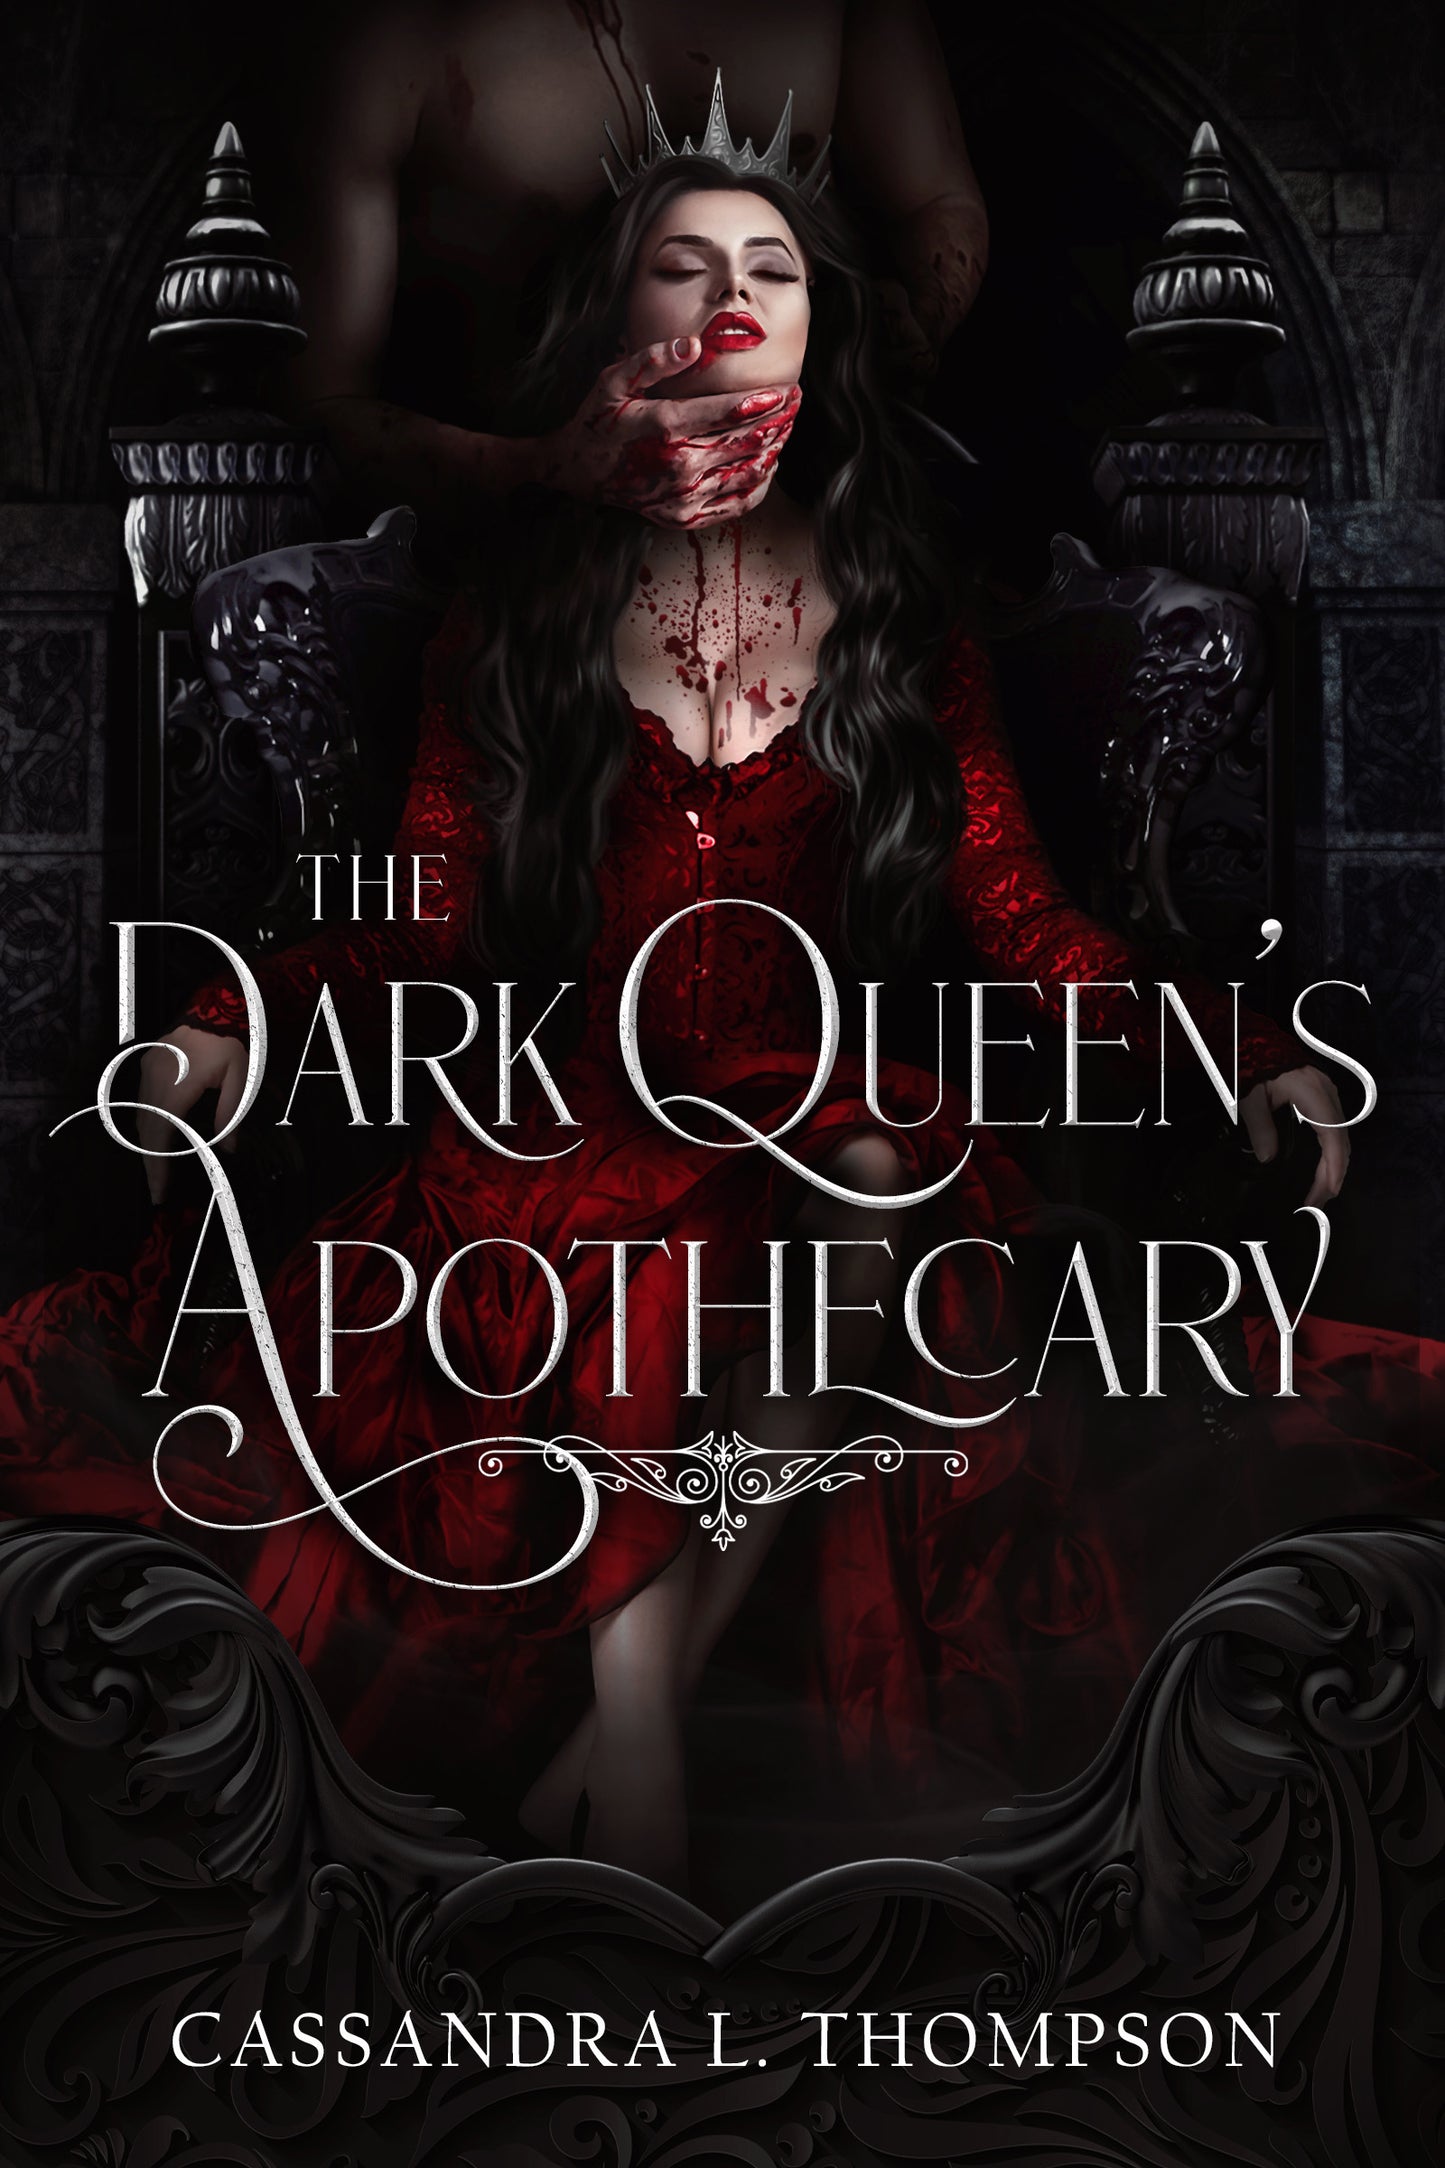 The Dark Queen's Apothecary